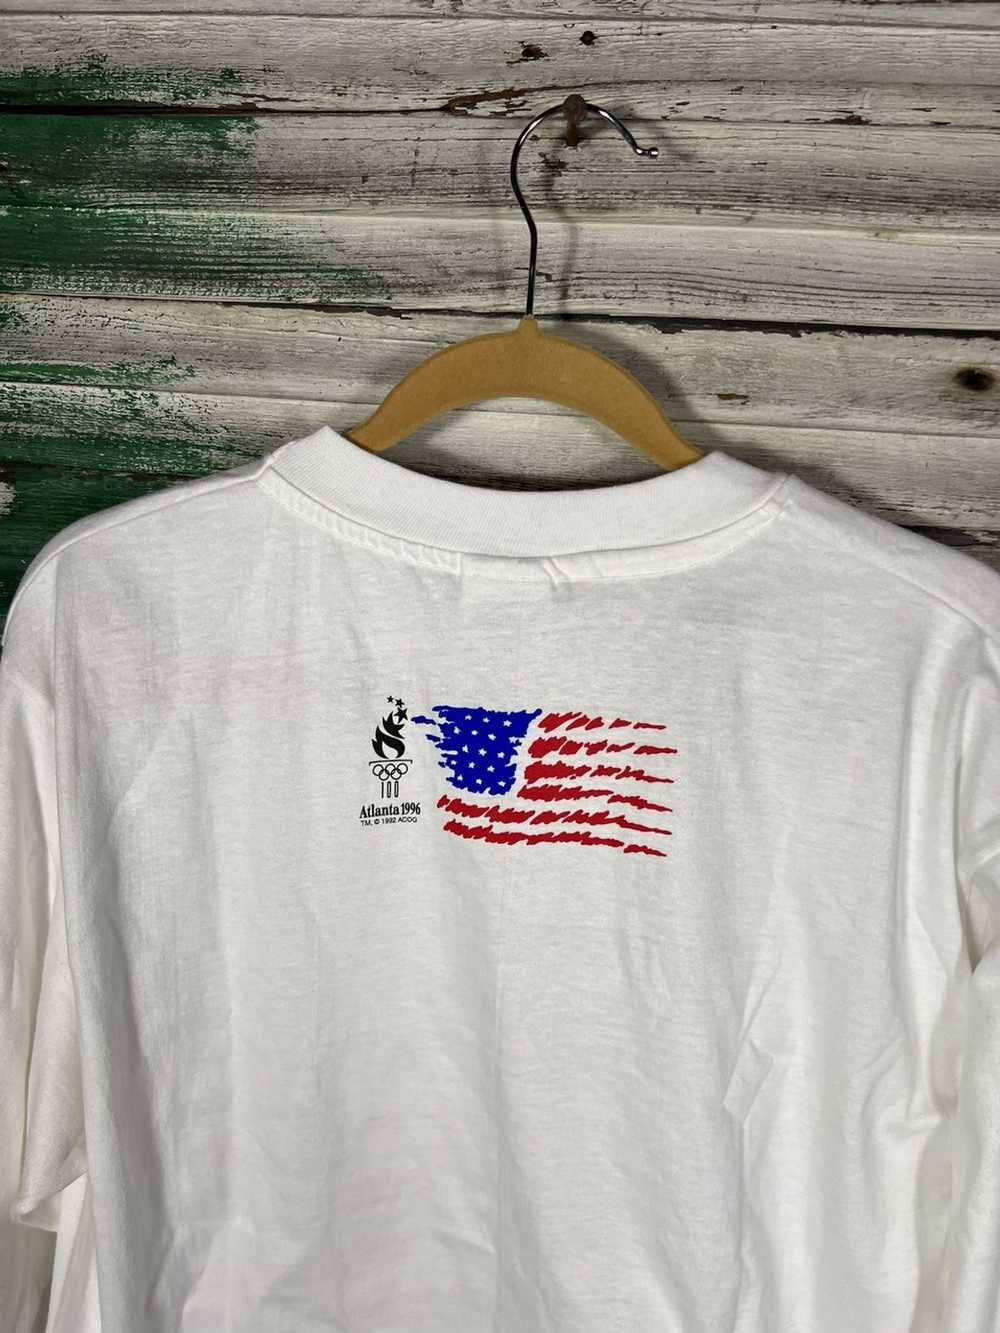 Vintage Vintage 1996 Atlanta Olympics shirt - image 7